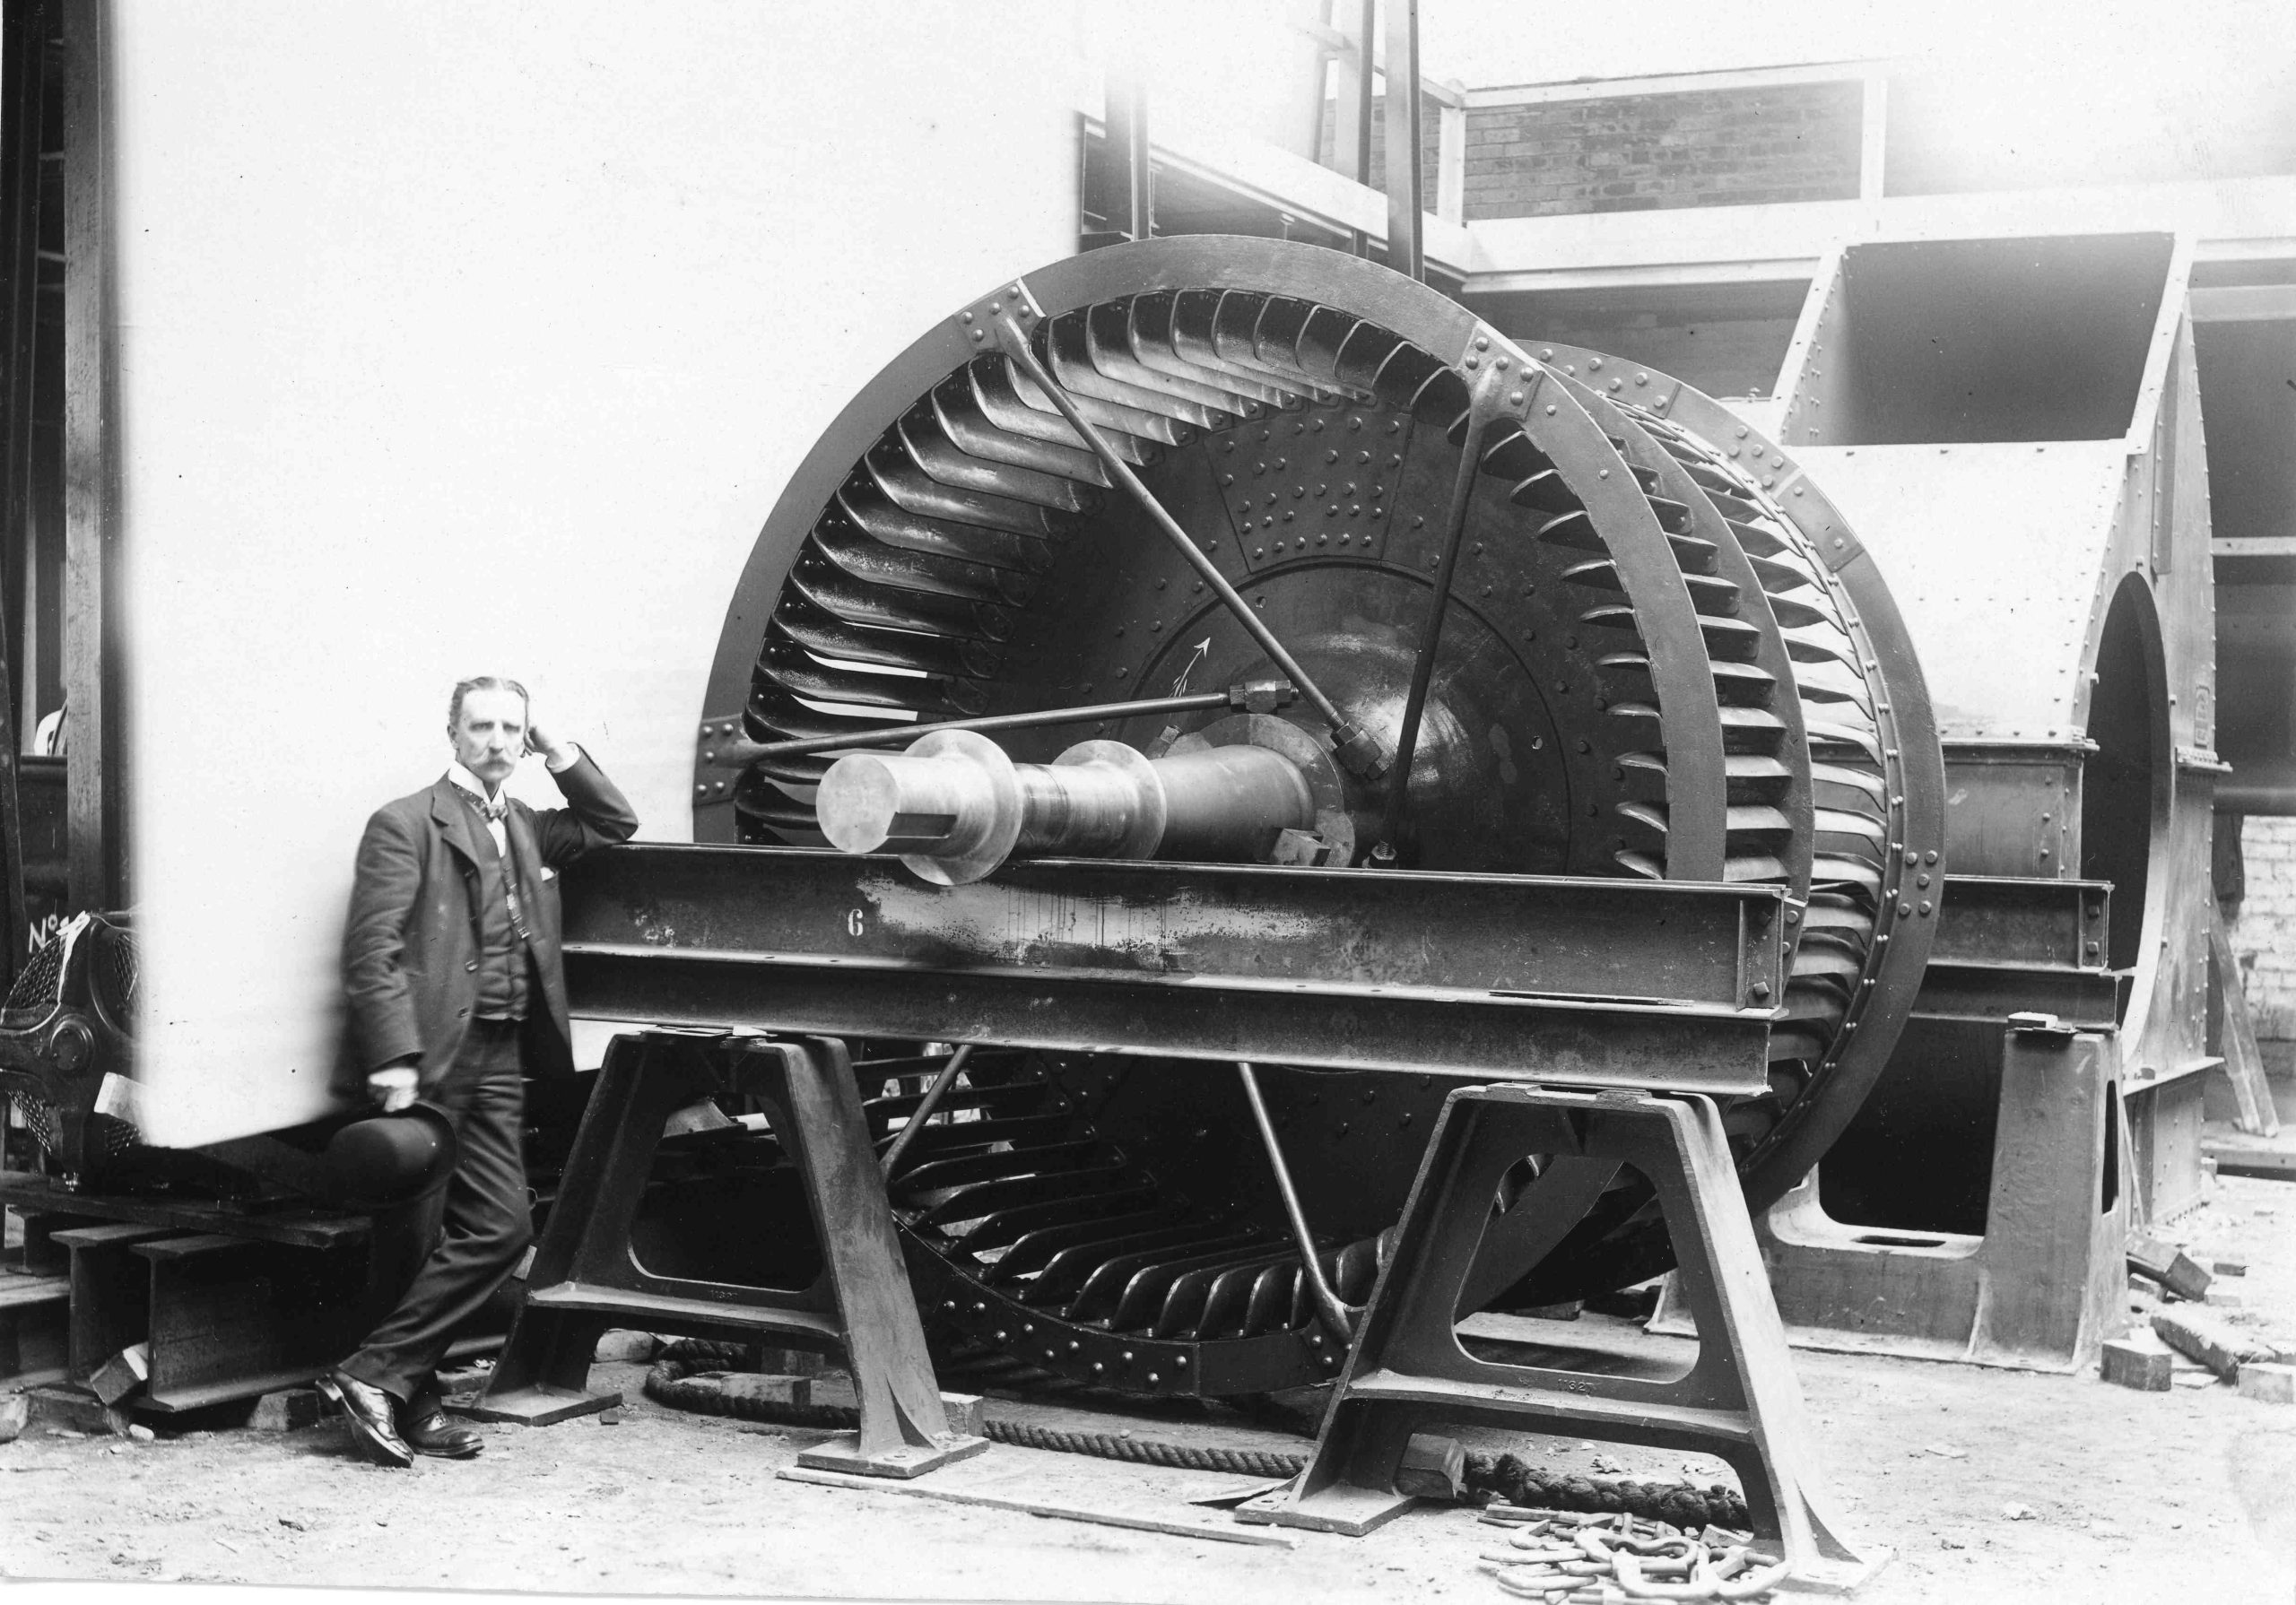 ساموئل کلیلند دیویدسون با یک فن سانتریفیوژ بزرگ که احتمالاً برای تهویه شفت معدن در کارخانه مهندسی Sirocco، بلفاست طراحی و تولید کرد.